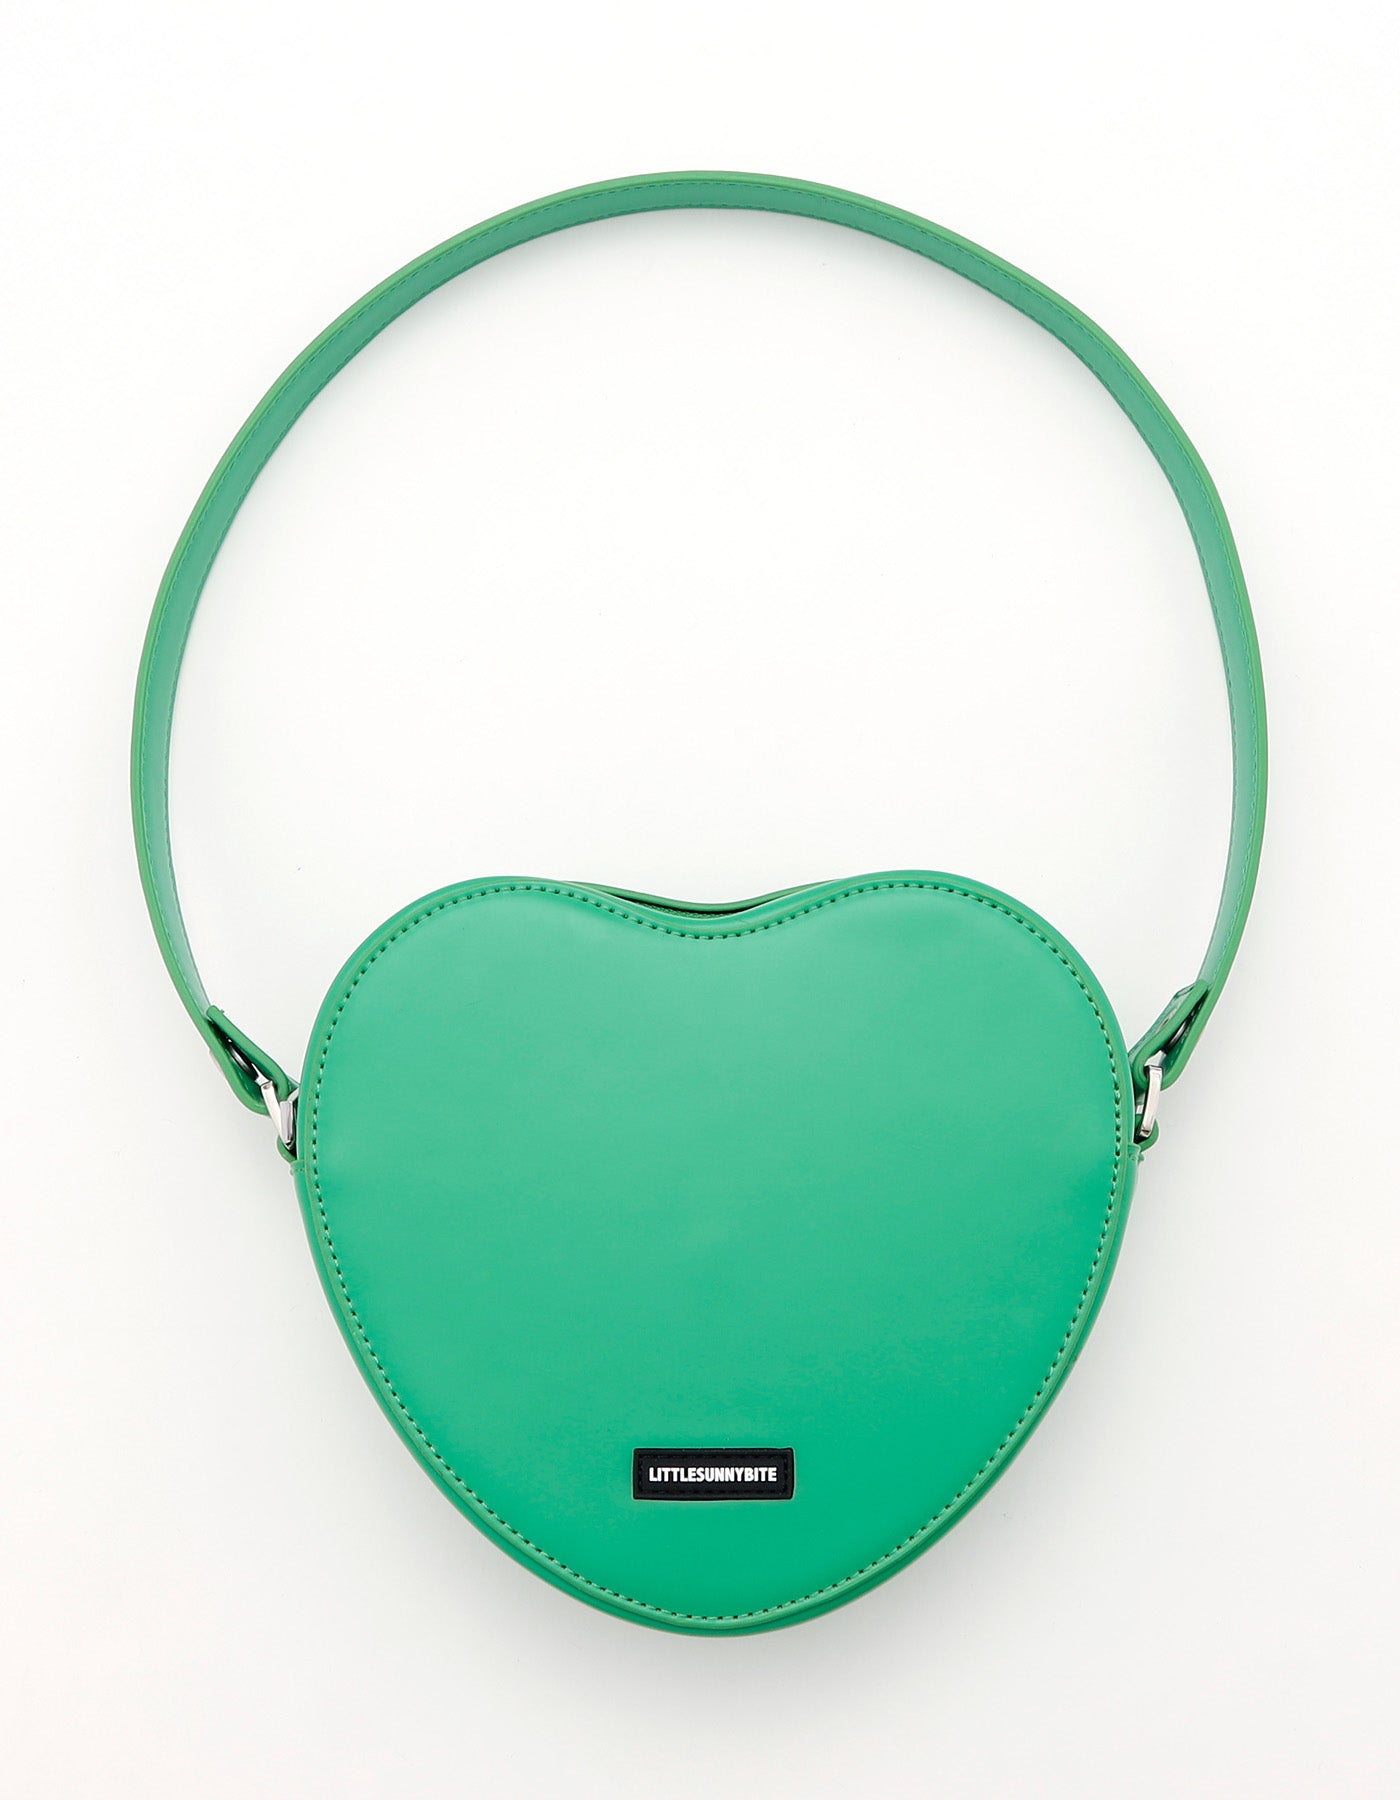 little sunny bite (リトルサニーバイト)heart bag / GREEN – little